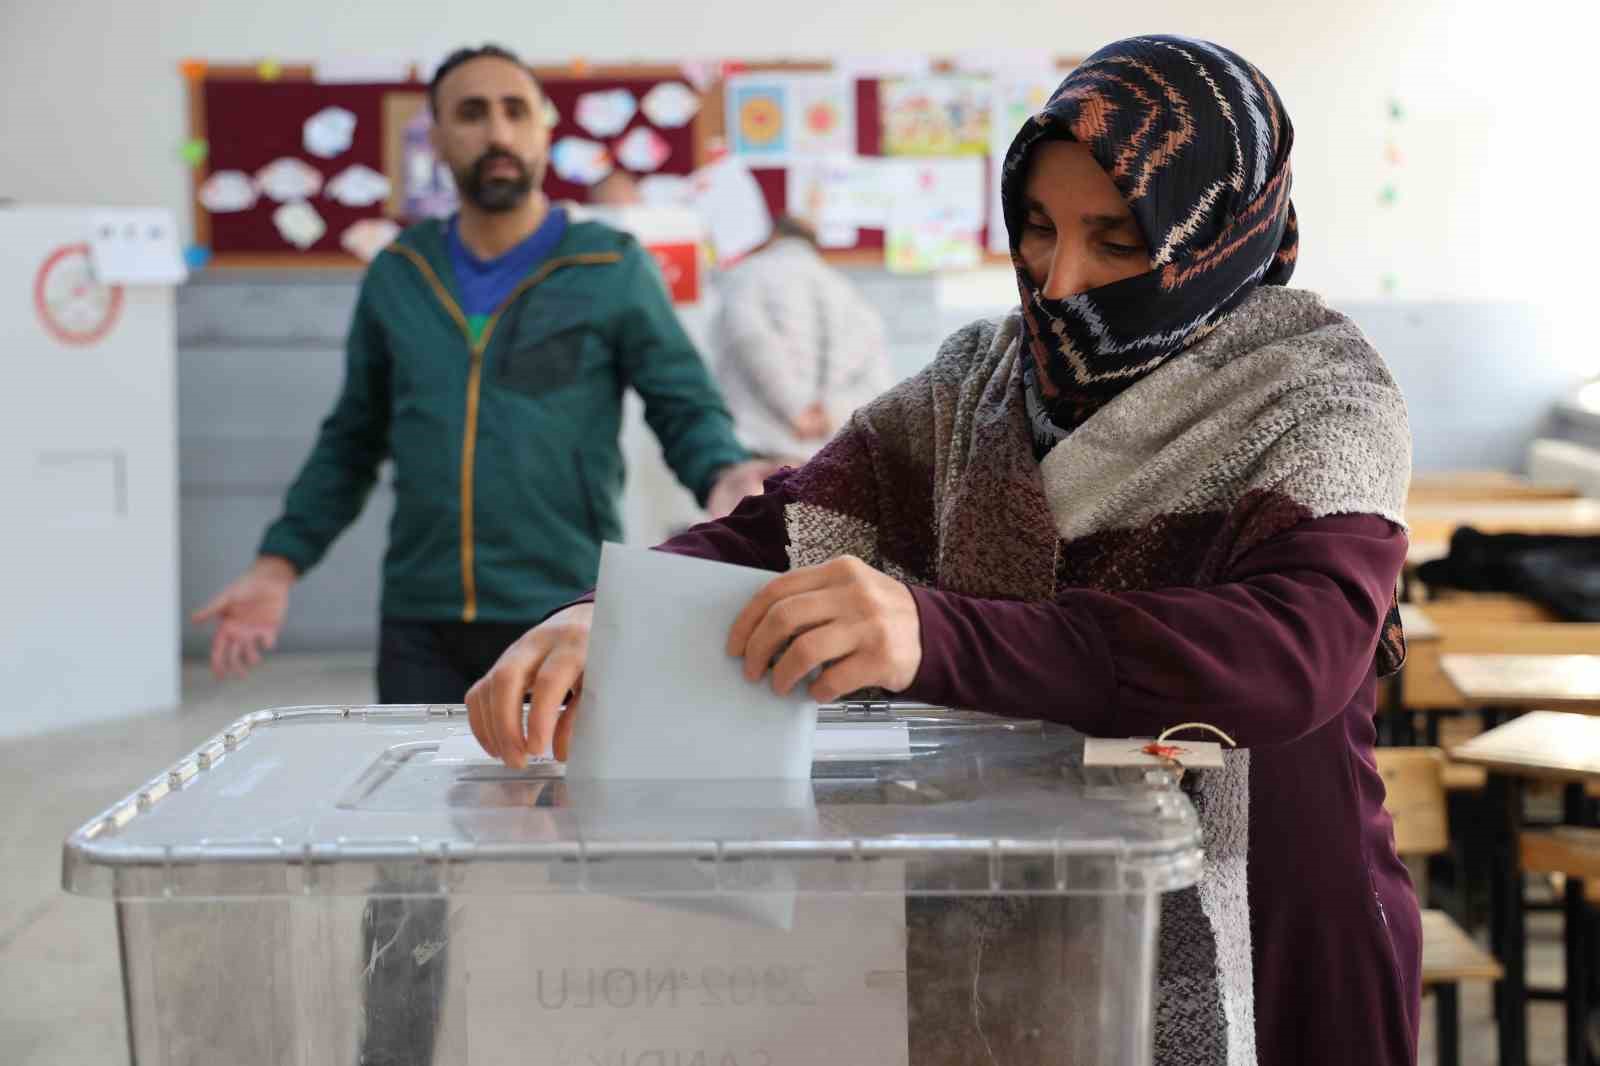 Diyarbakır’da oy verme işlemi başladı